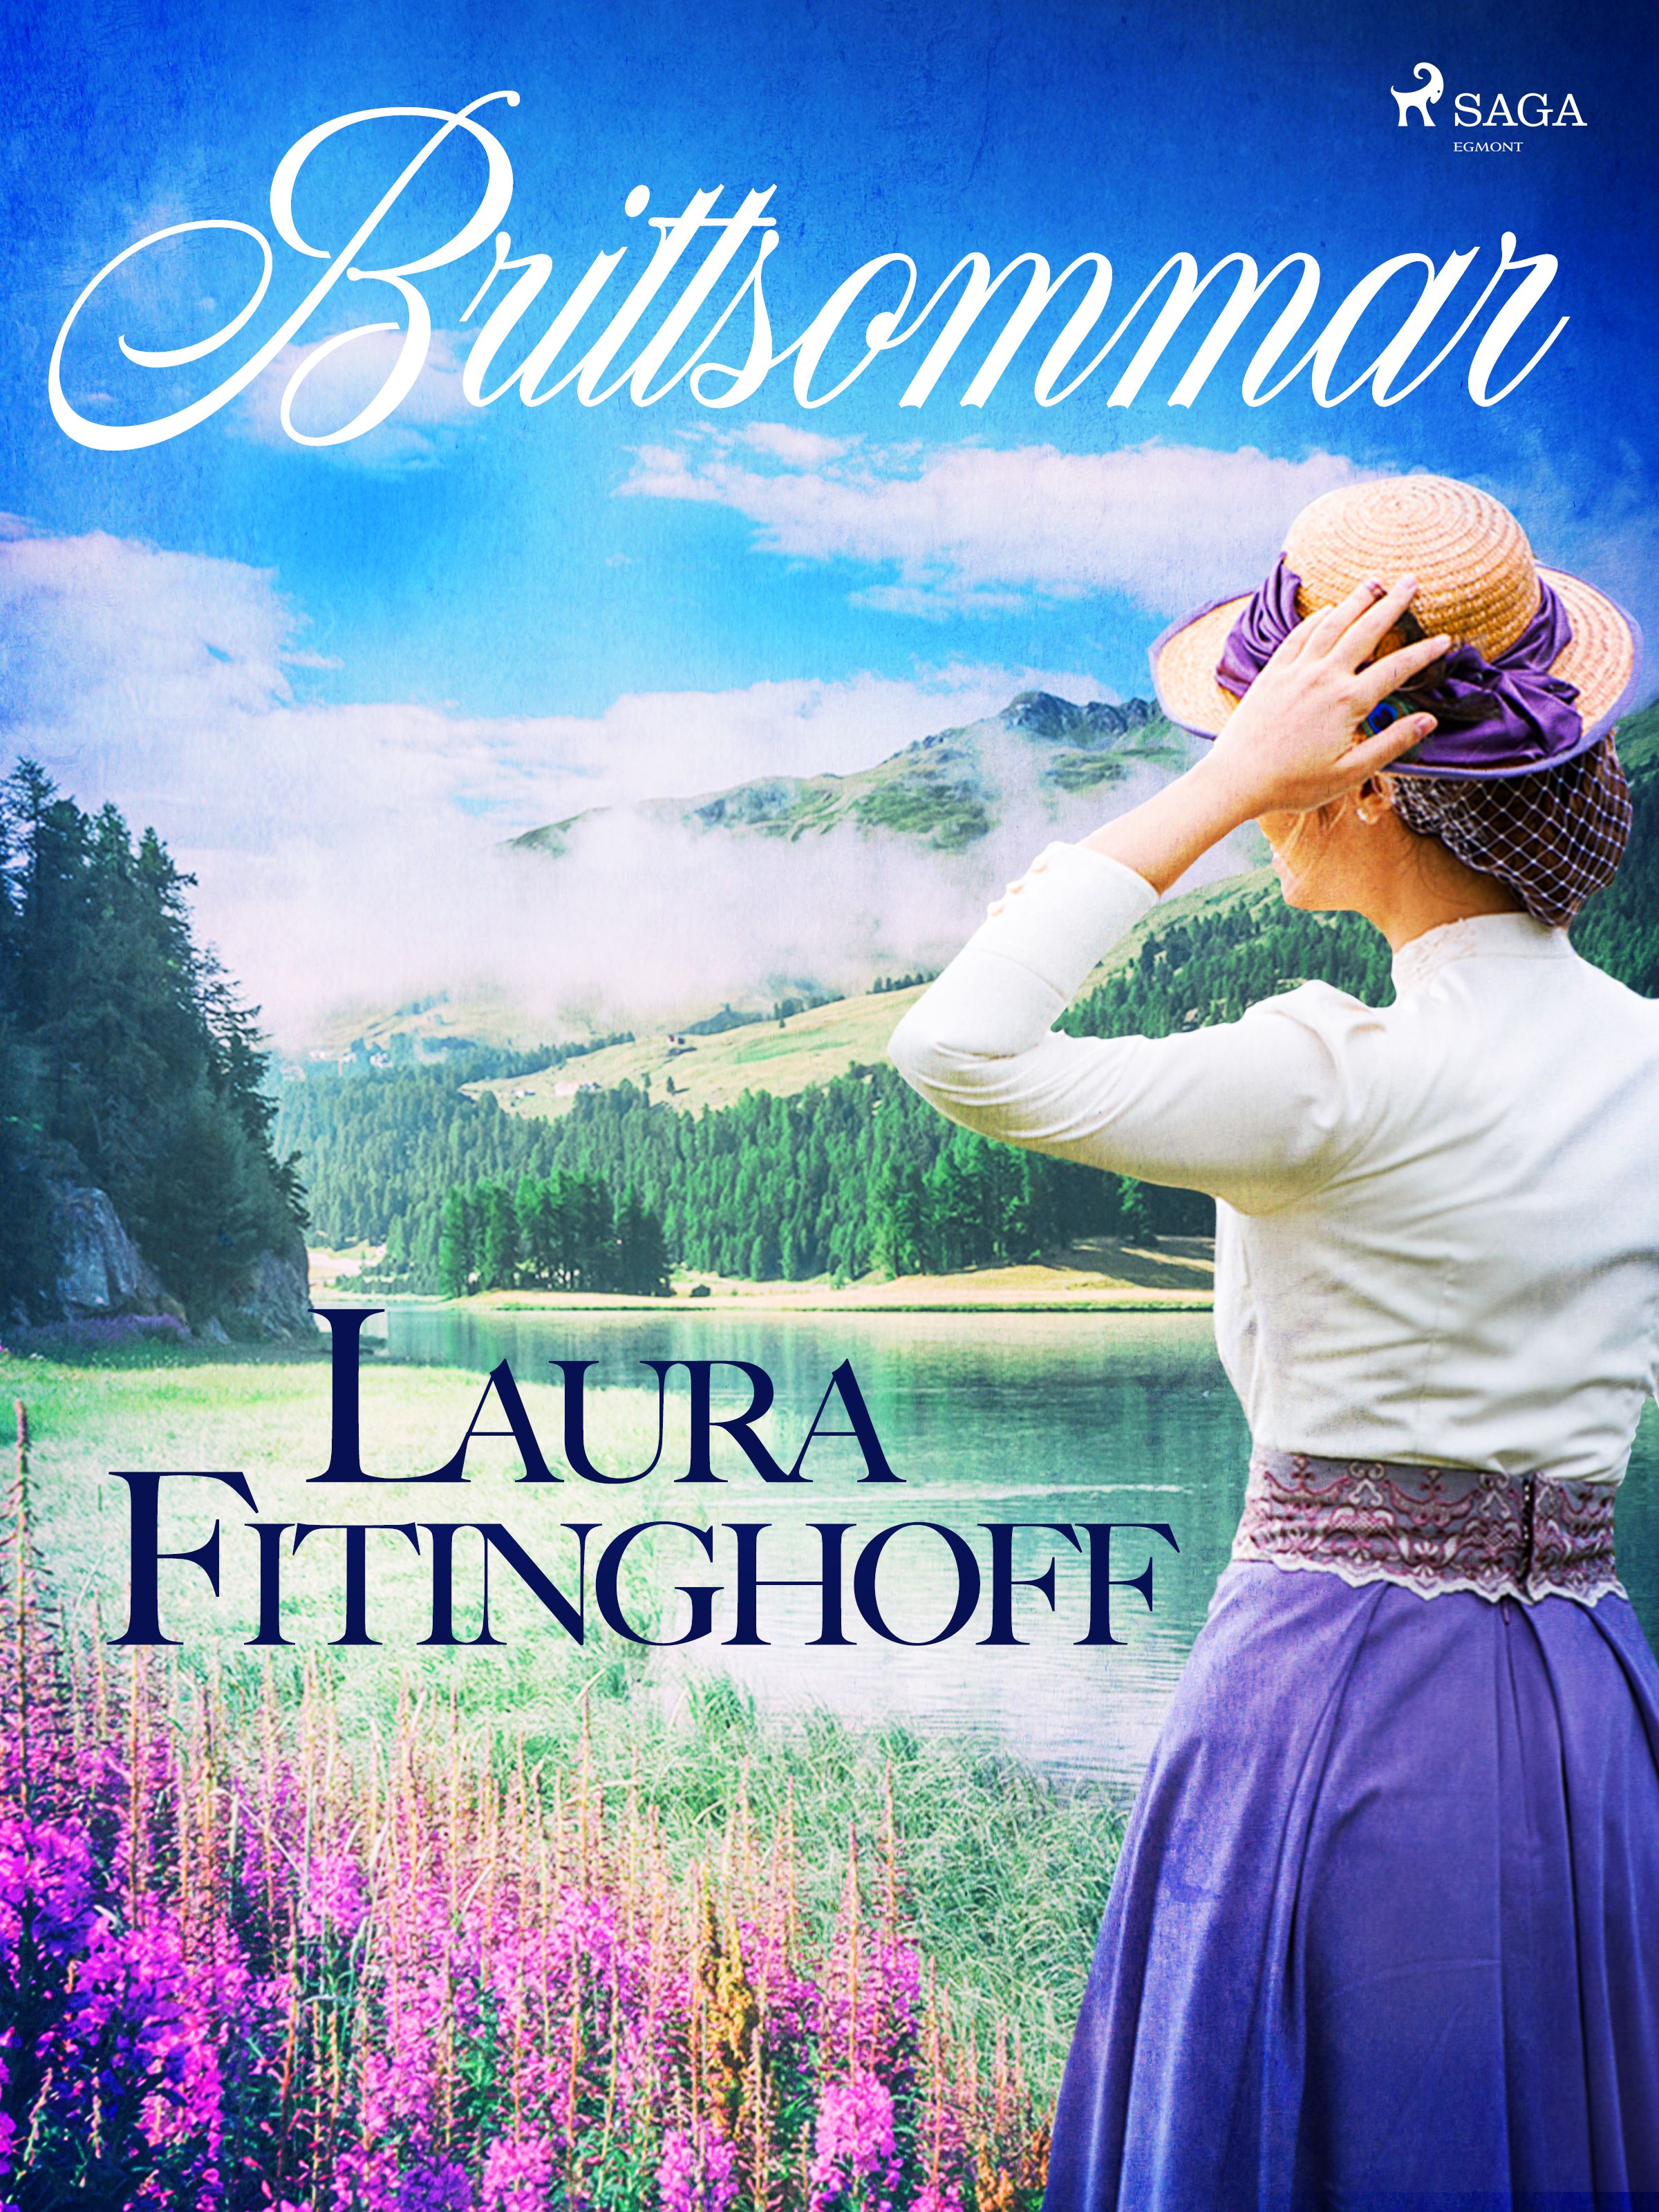 Brittsommar, e-bog af Laura Fitinghoff